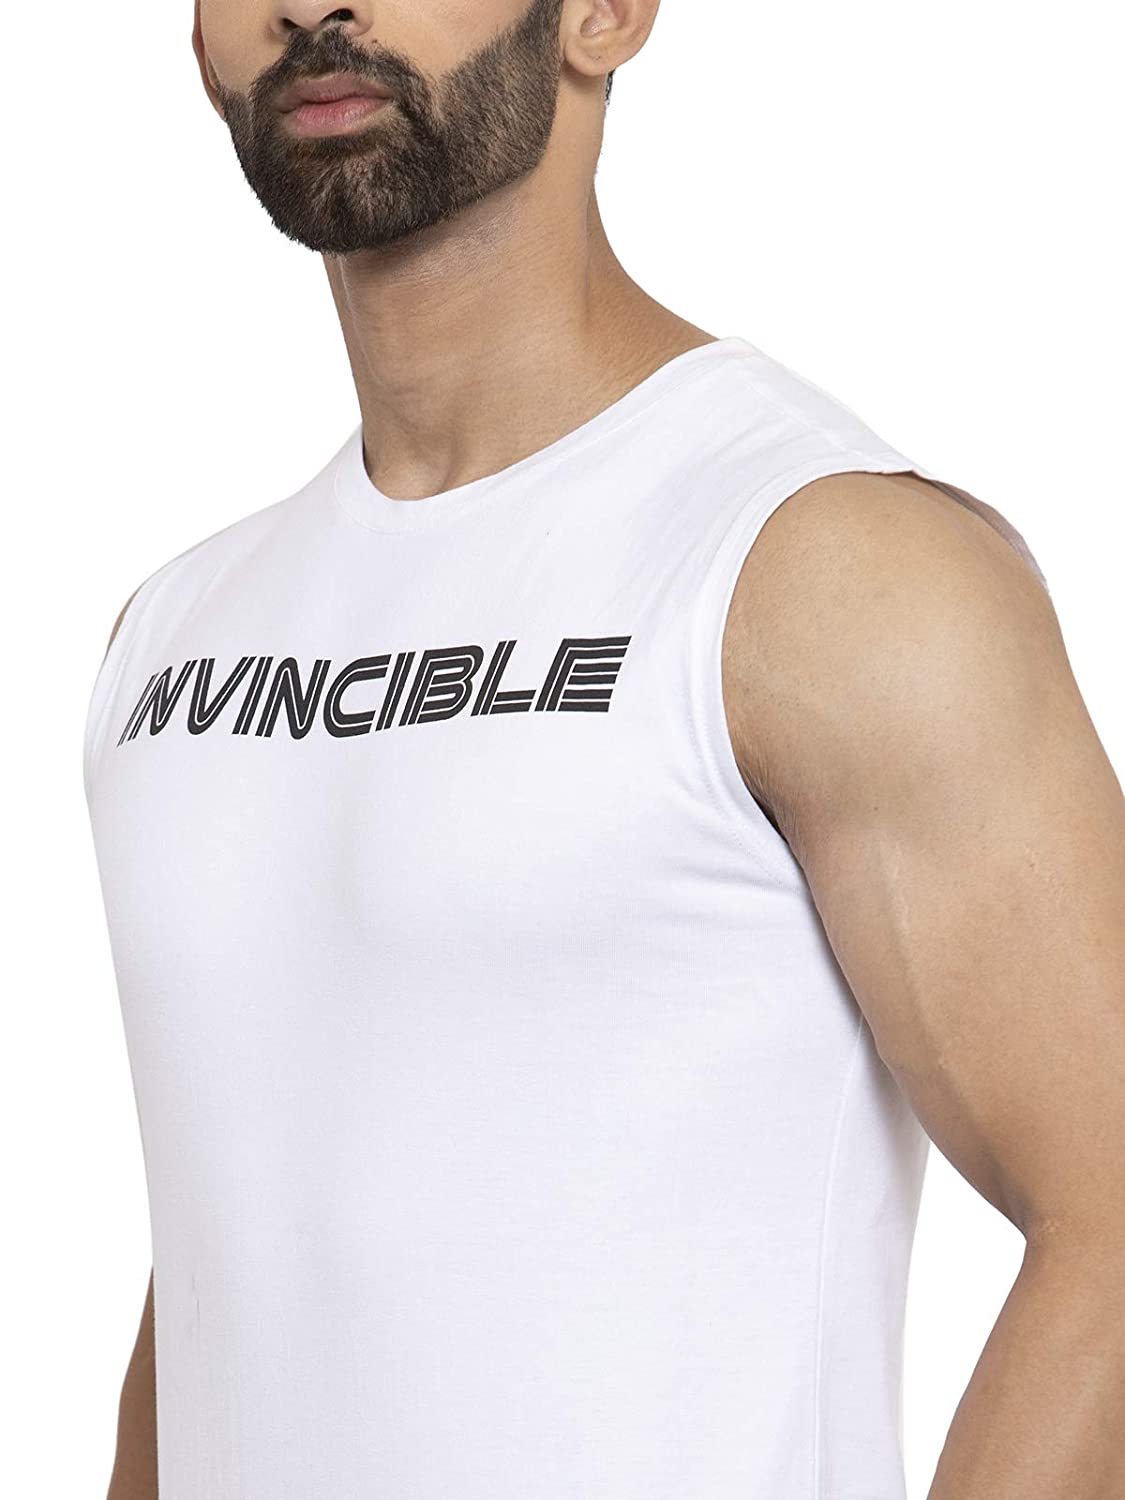 Invincible Men’s Muscle Tee